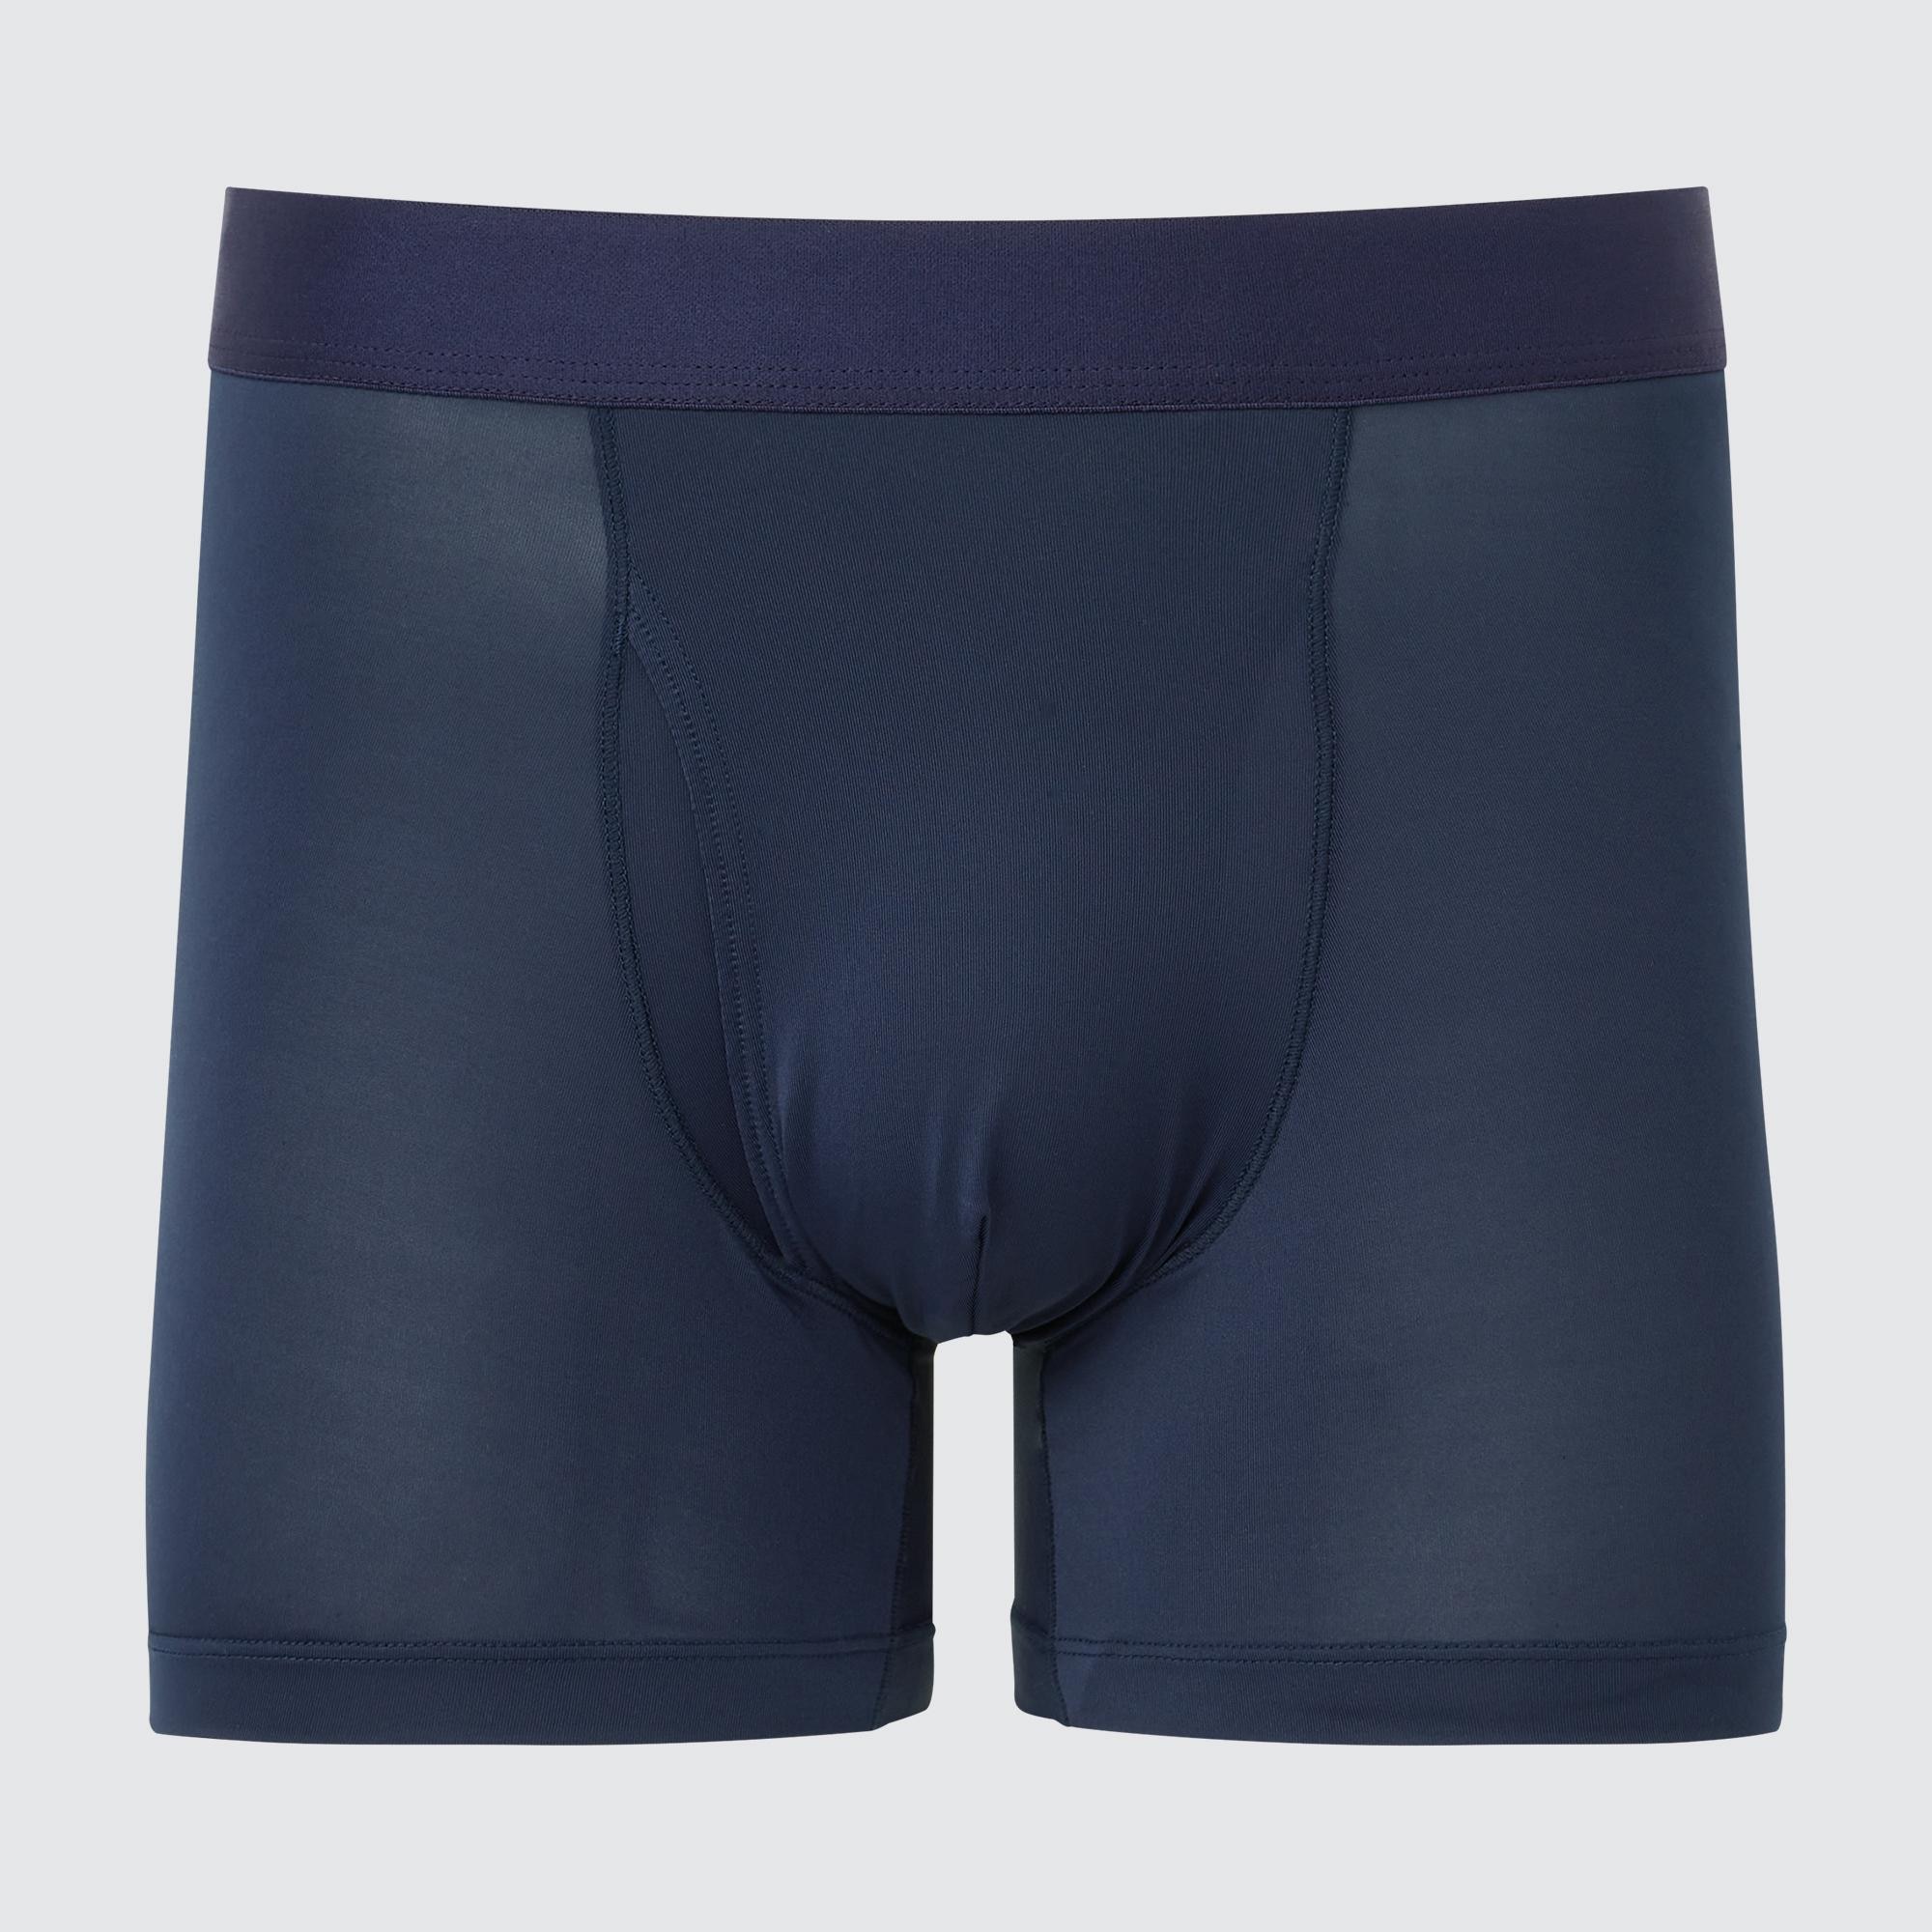 uniqloboxers quick little hack to save the nappy bum #uniqlo #trendin, Boxer  Shorts